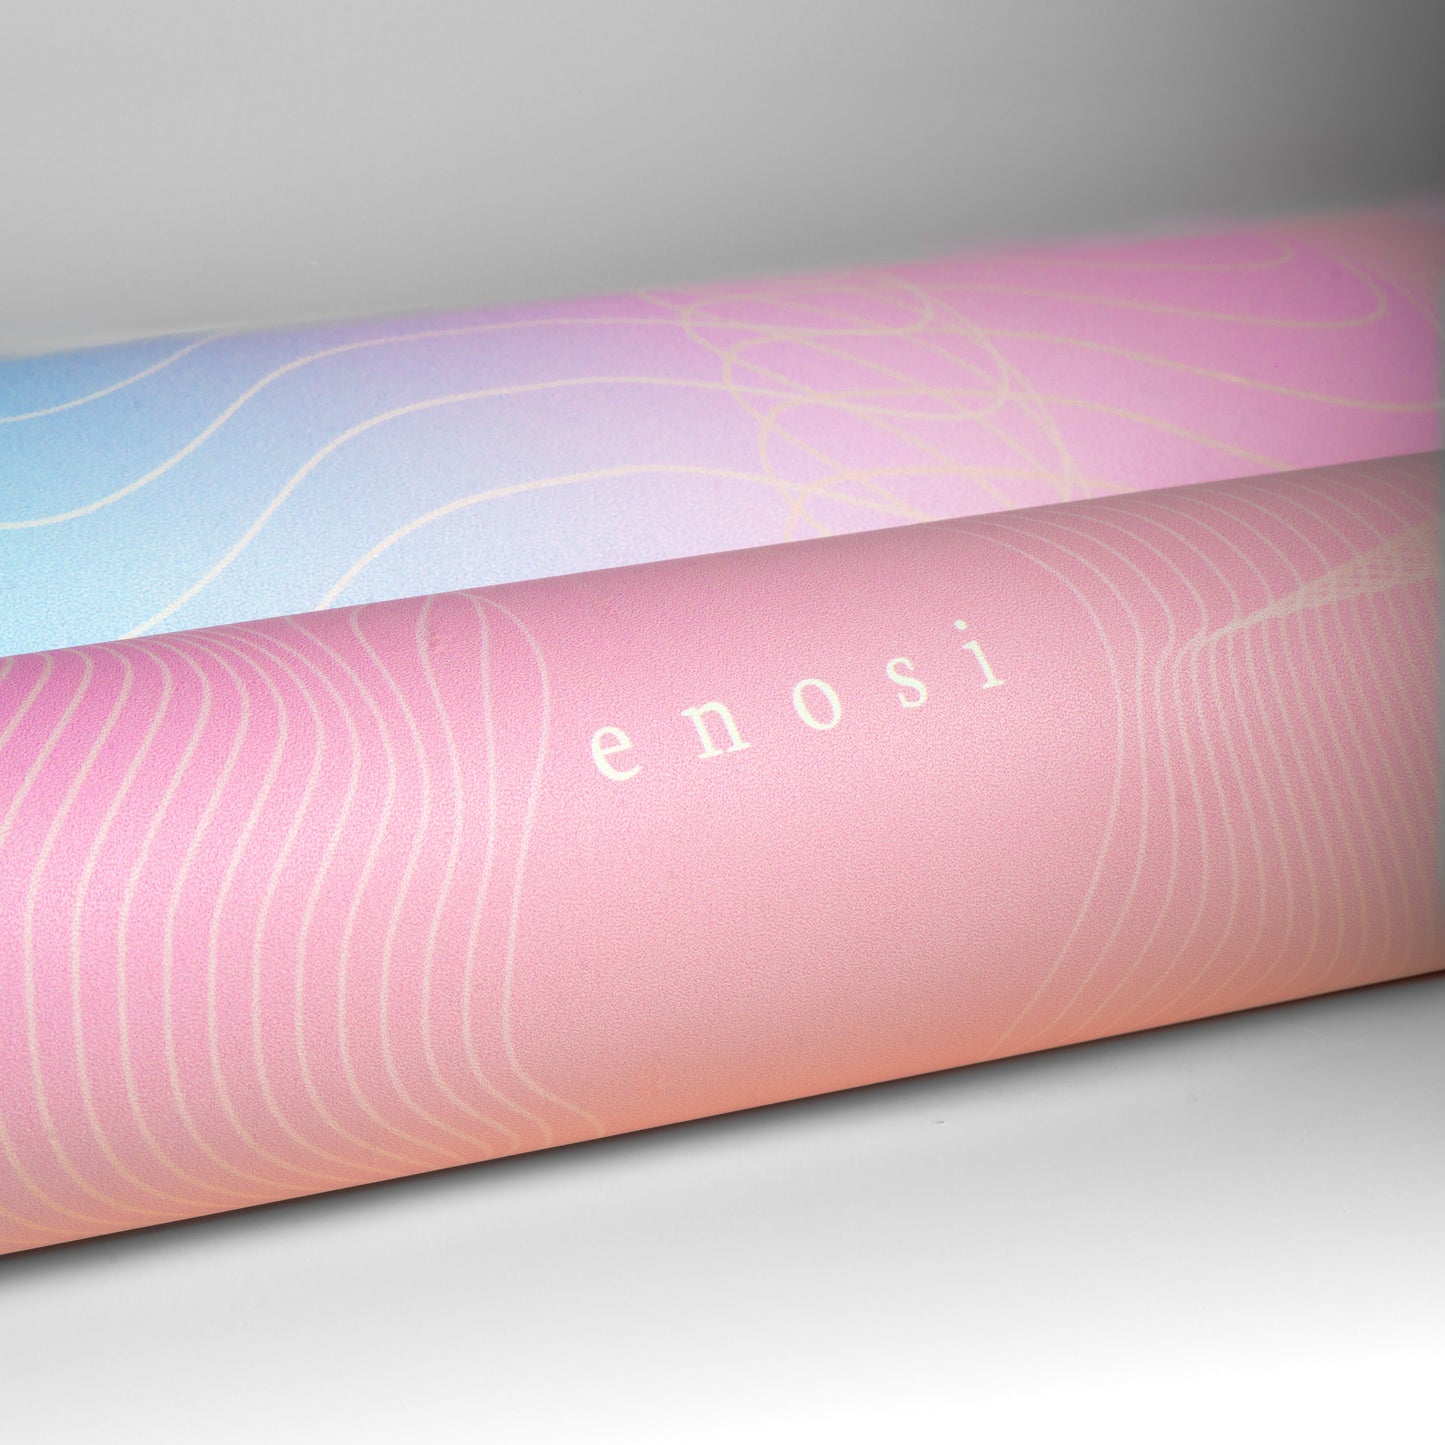 Enosi Yoga Mat 3.5mm